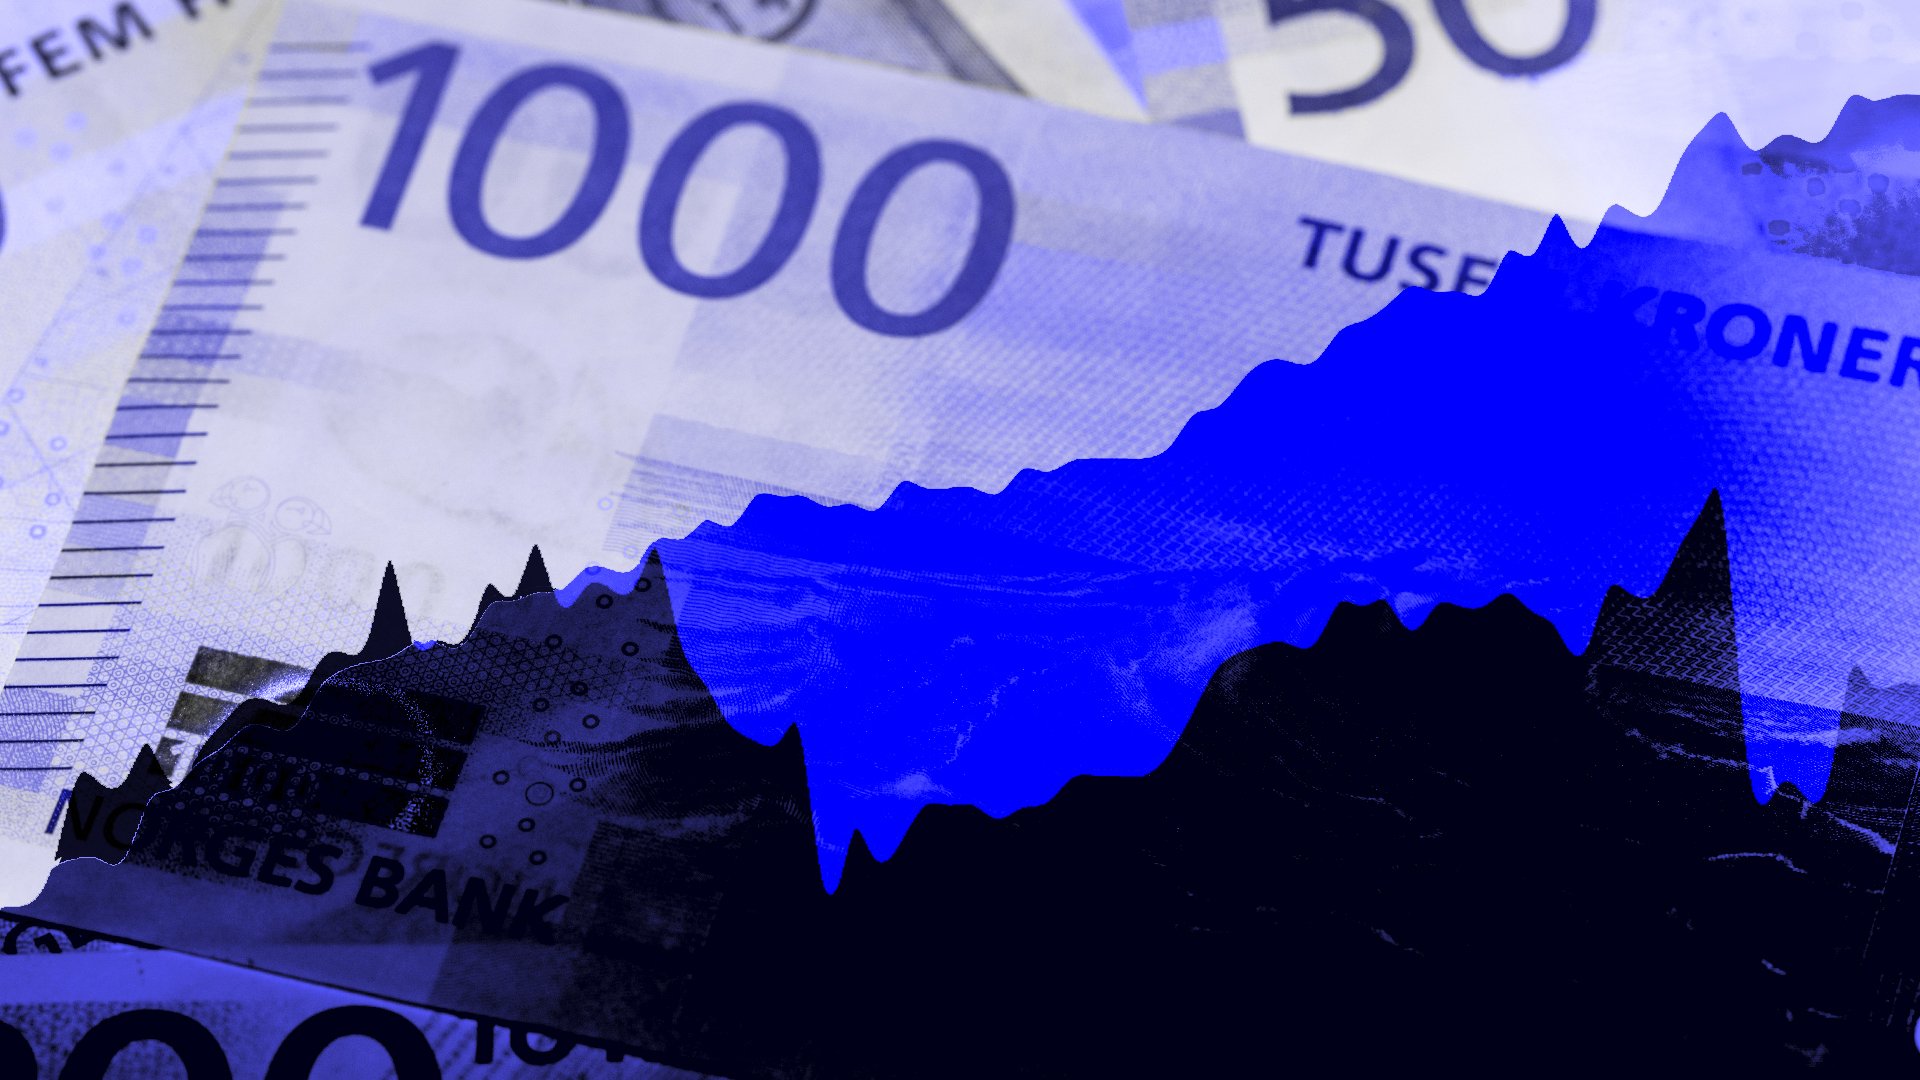 Norsk favorittfond vingler, nå rømmer investorene